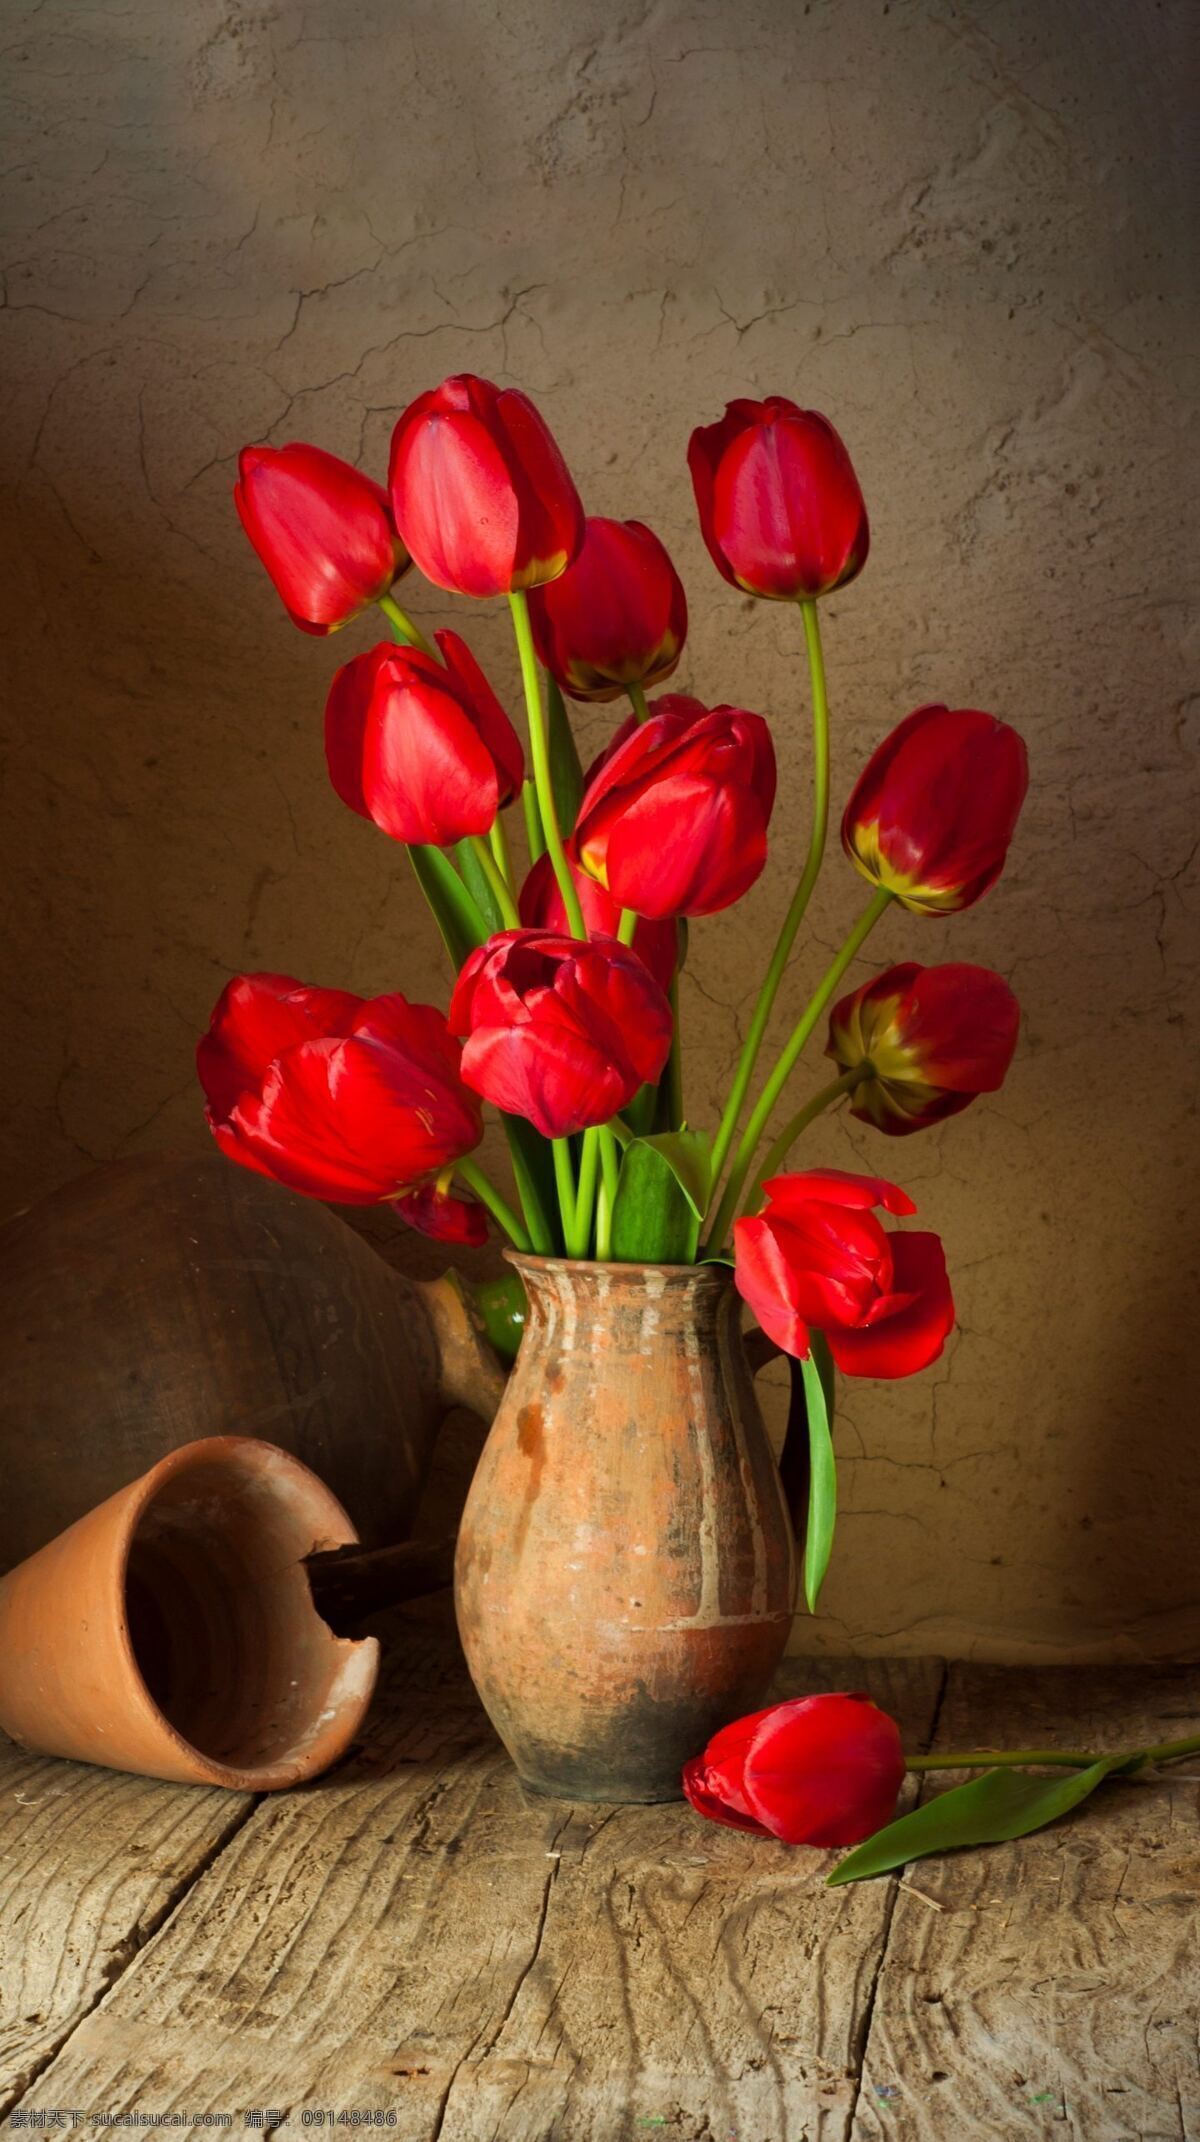 红玫瑰 陶瓷 花瓶 插花 自然 木制的 木板 桌子 红色 花束 特写 叶子 玫瑰 植物 花卉 浪漫 清新 茎 纯净 玫瑰花 情人节 静物 玫瑰花瓣